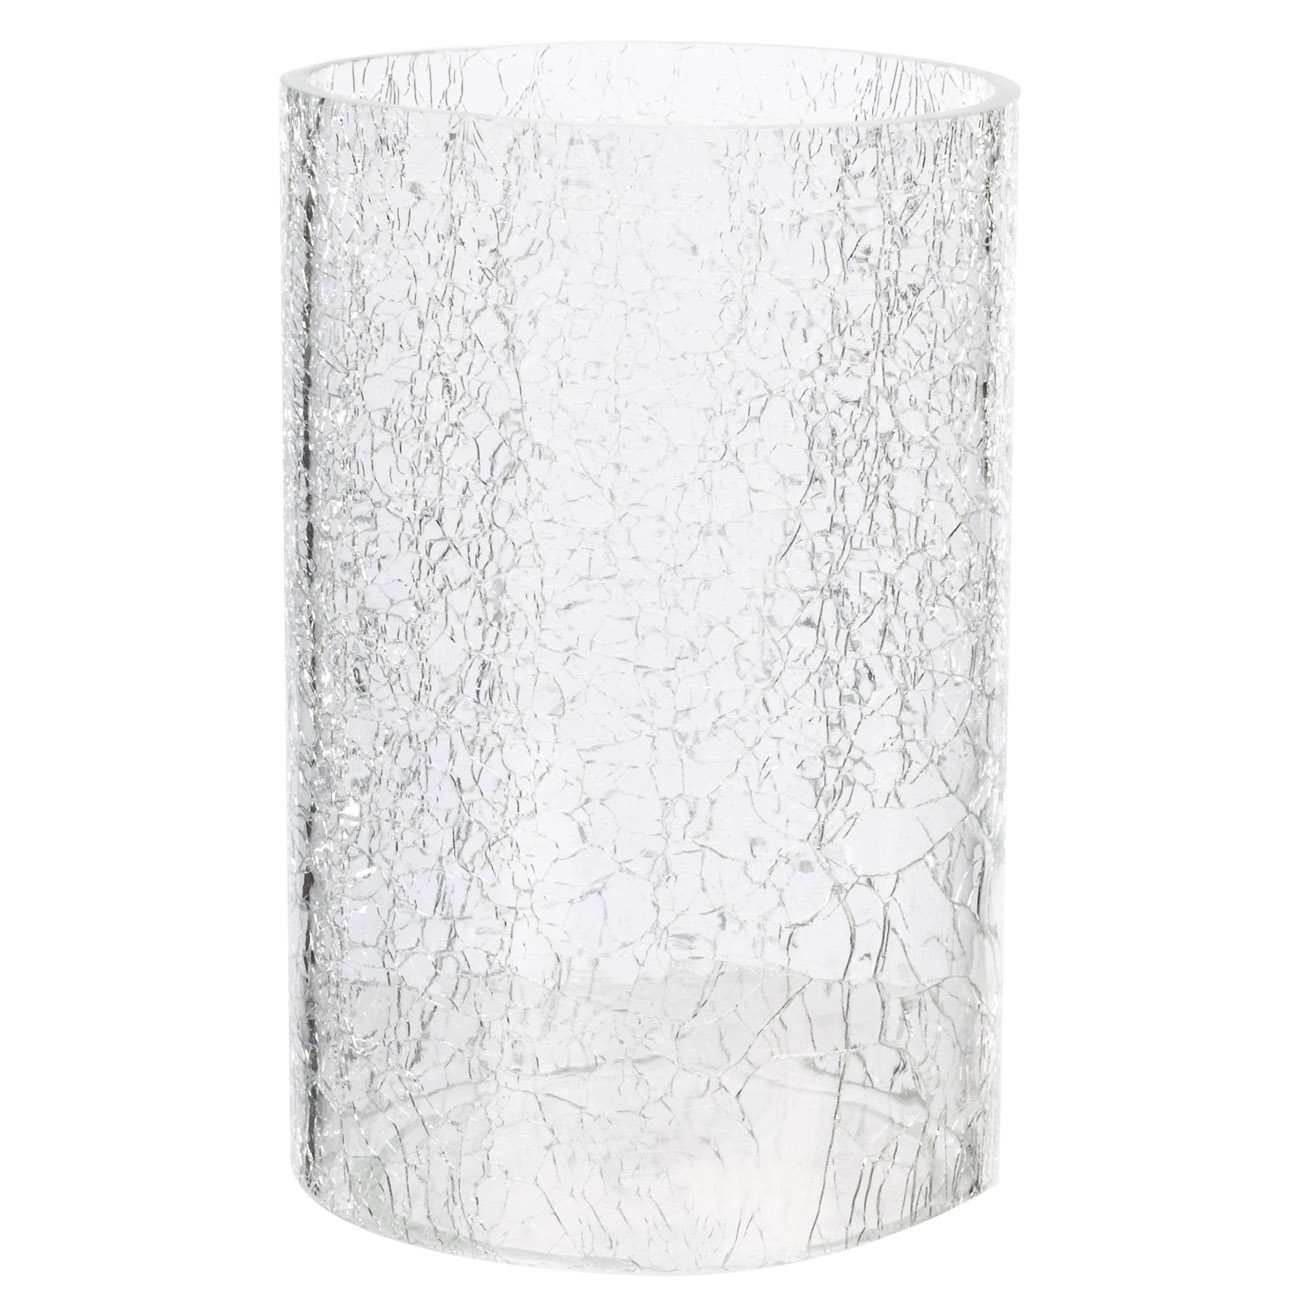 Подсвечник, 32 см, для одной свечи, на ножке, стекло/металл, серебристый, Кракелюр, Fantastic Ice изображение № 4